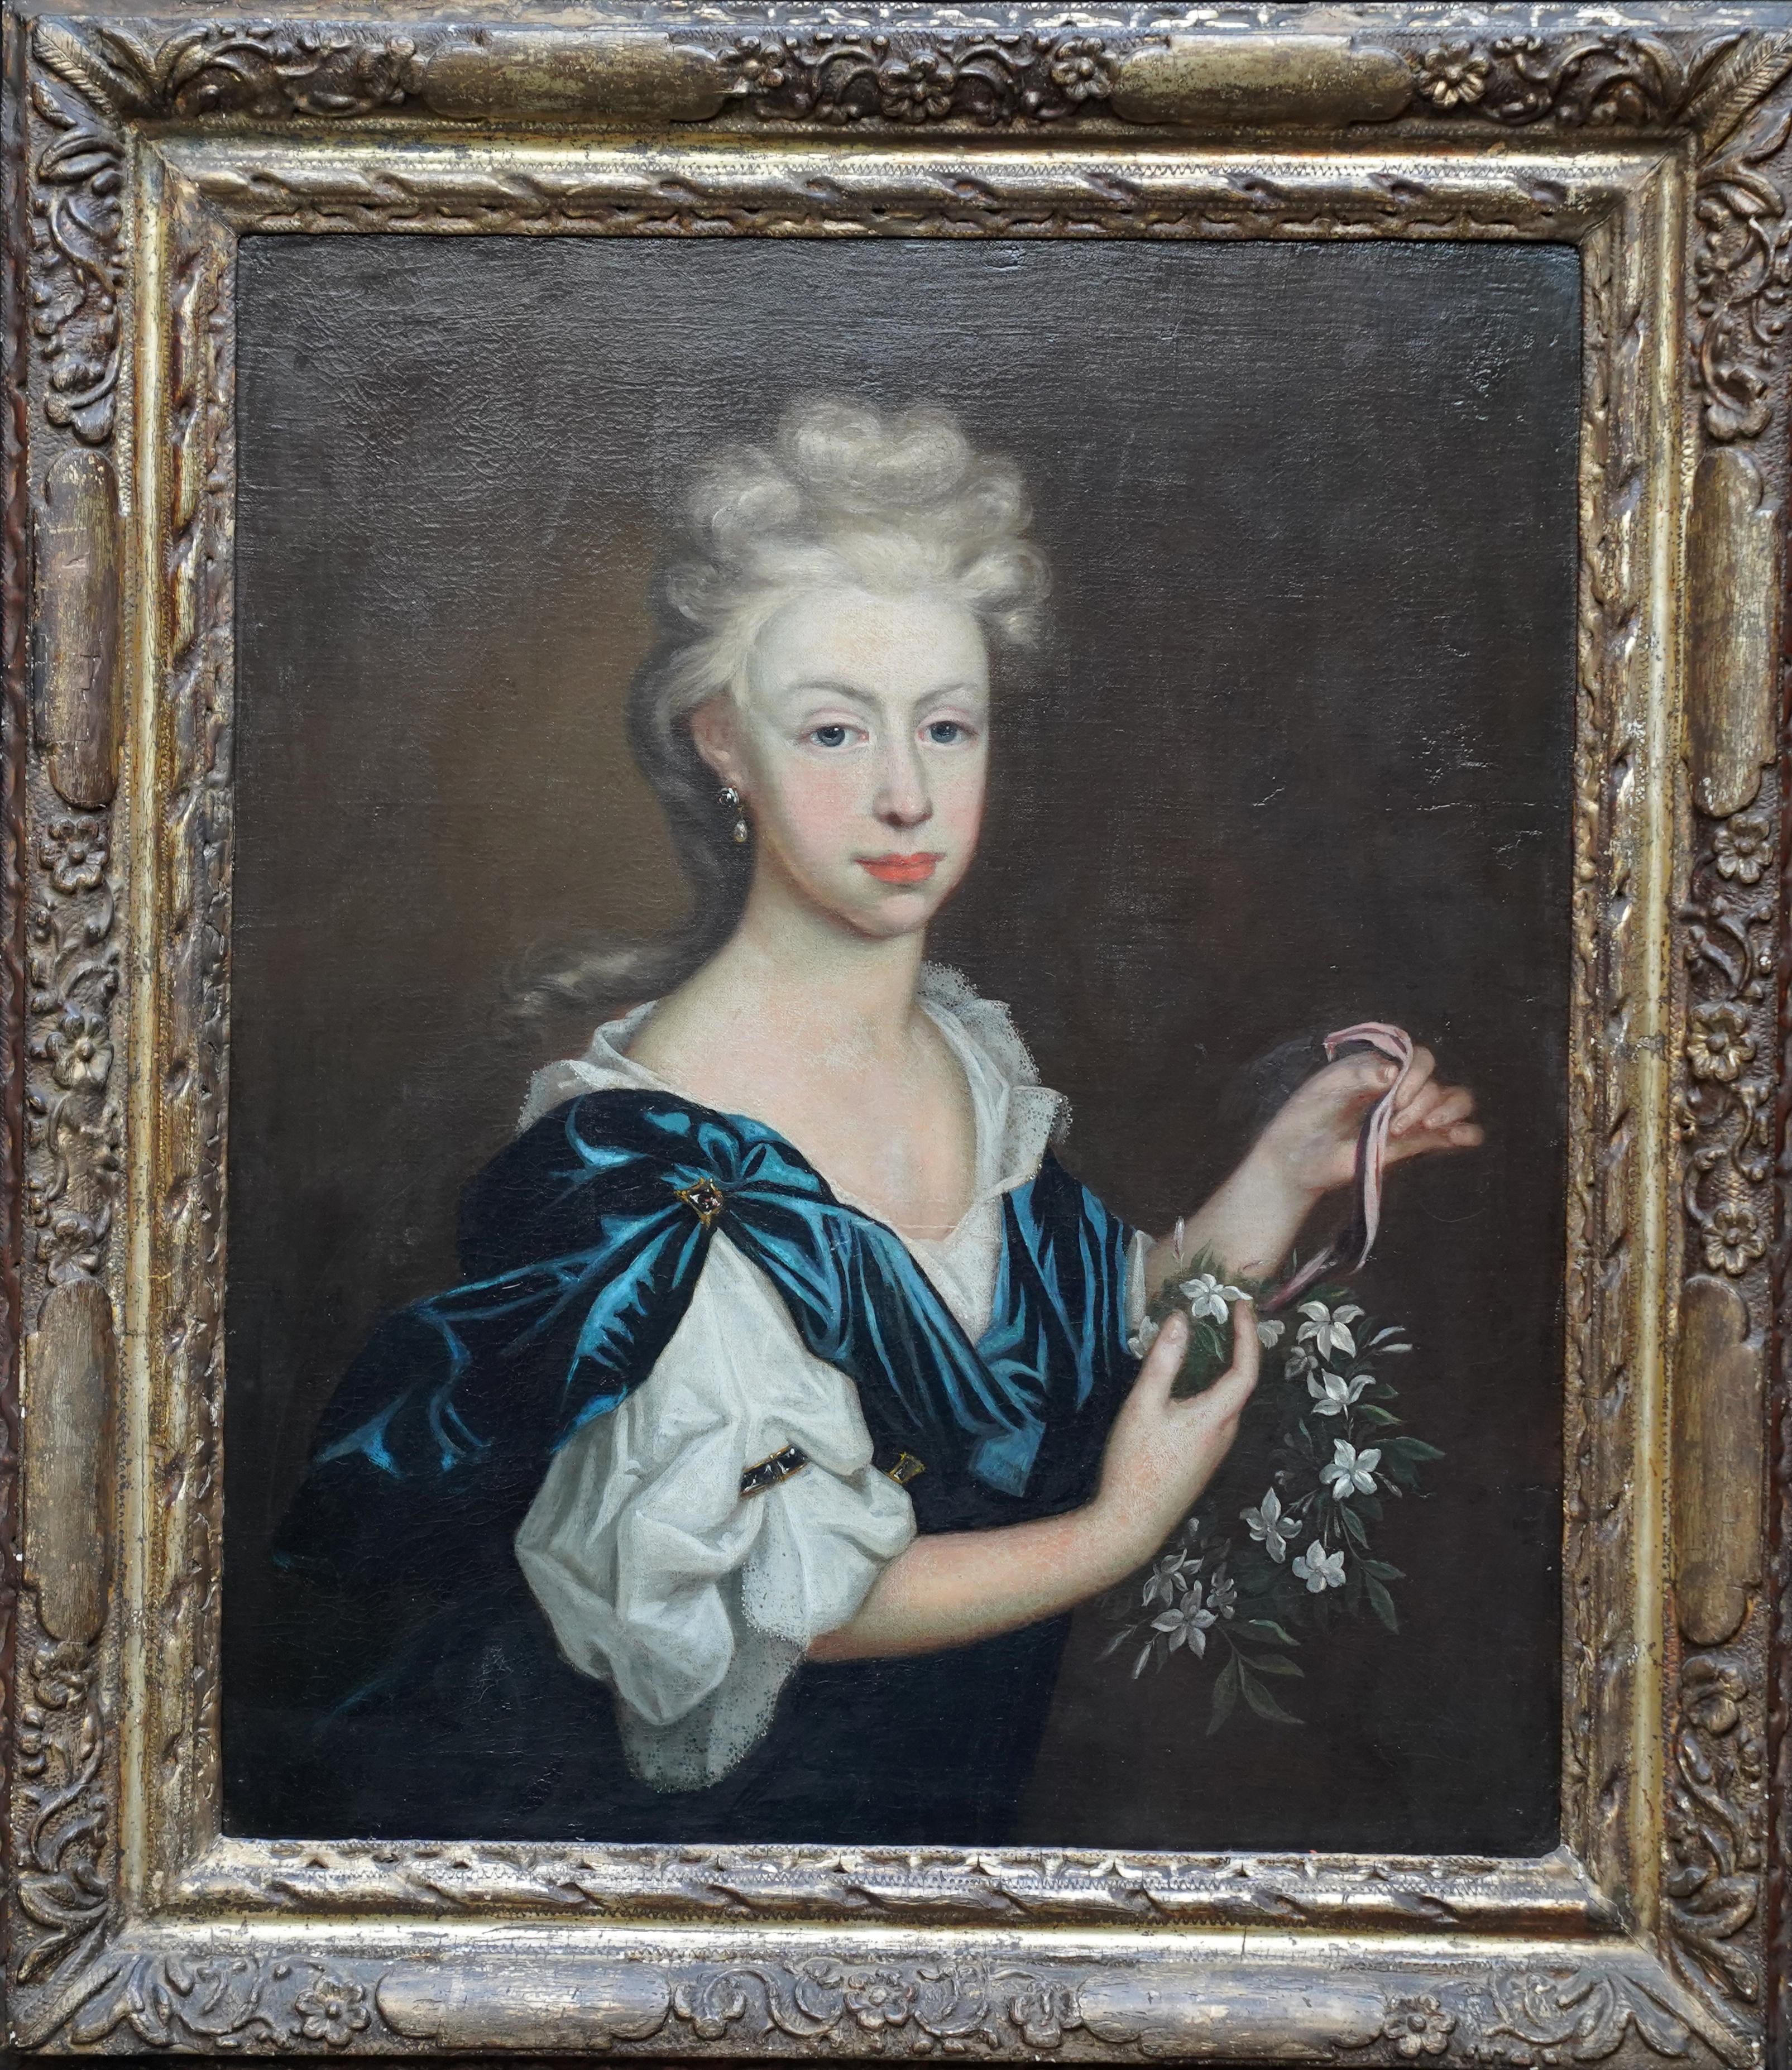 Portrait Painting Michael Dahl - Portrait de femme avec une guirlande de fleurs - Peinture à l'huile de maître ancien britannique du 17ème siècle